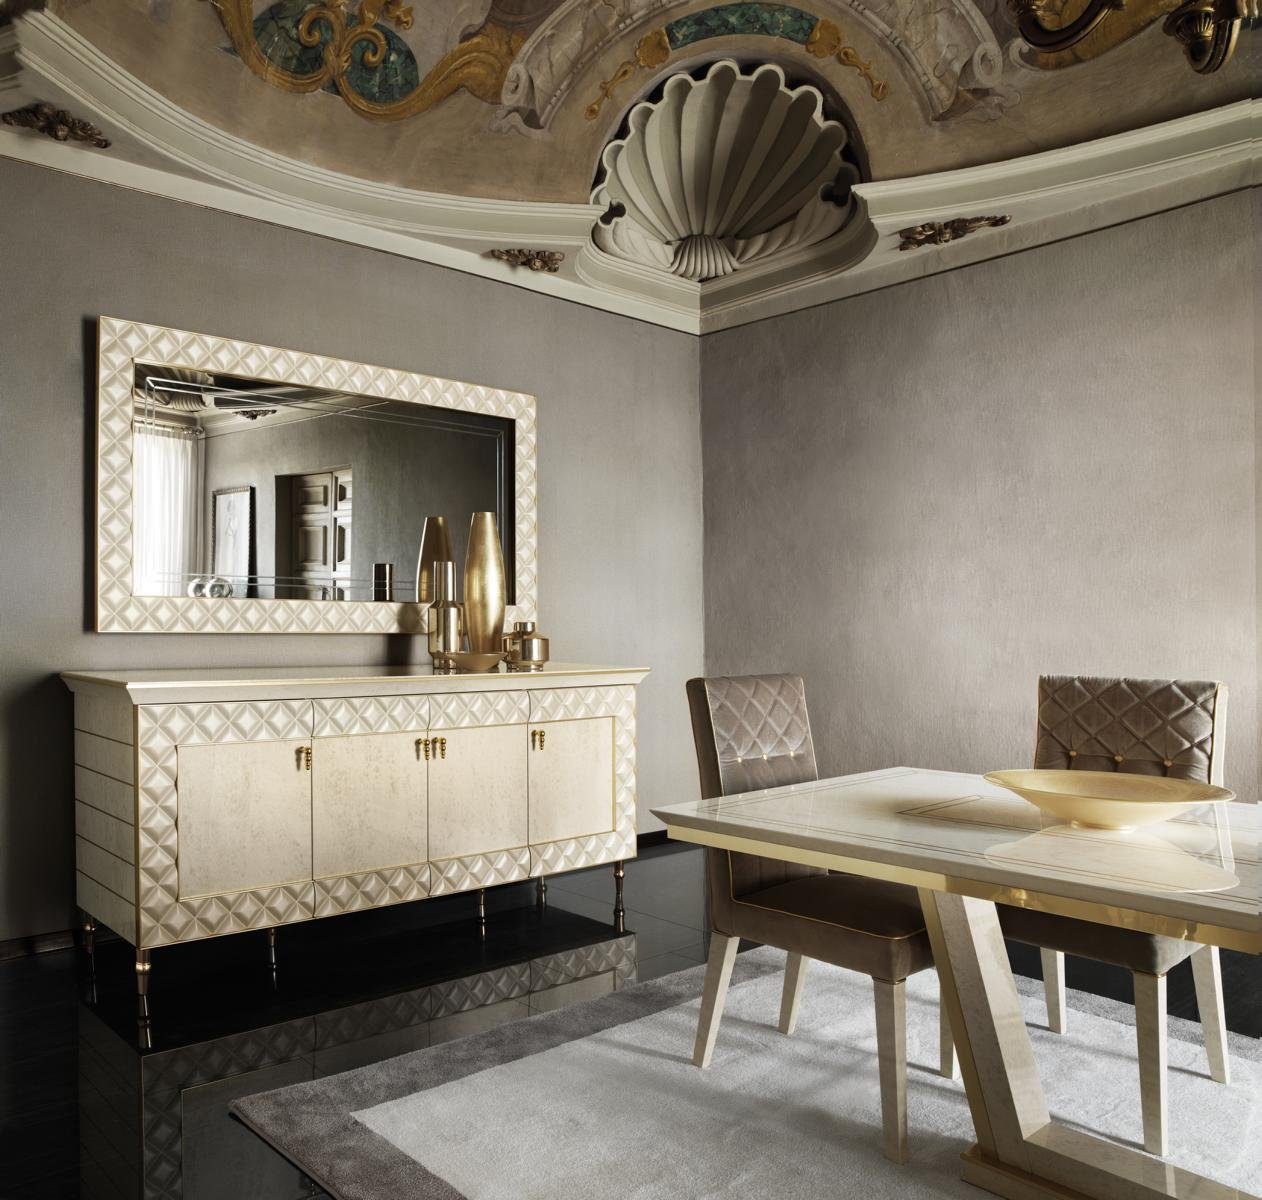 JVmoebel Essgruppe, 8 Stuhl Barock luxus Designer Esszimmer Rokoko Jugendstil arredoclassic™ Stühle Möbel royal